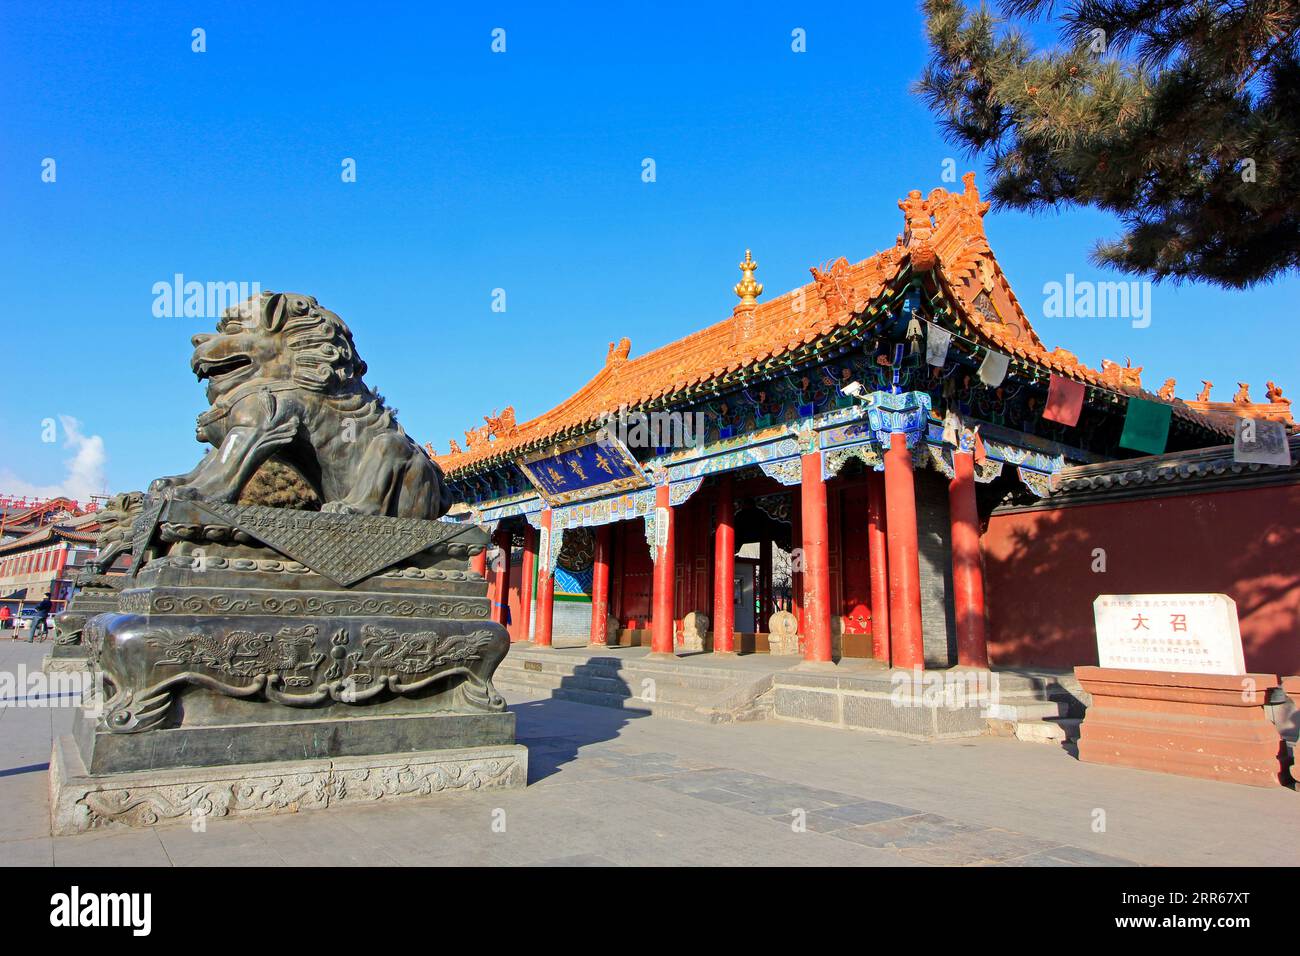 escultura de león de cobre en un templo, primer plano de la foto Foto de stock